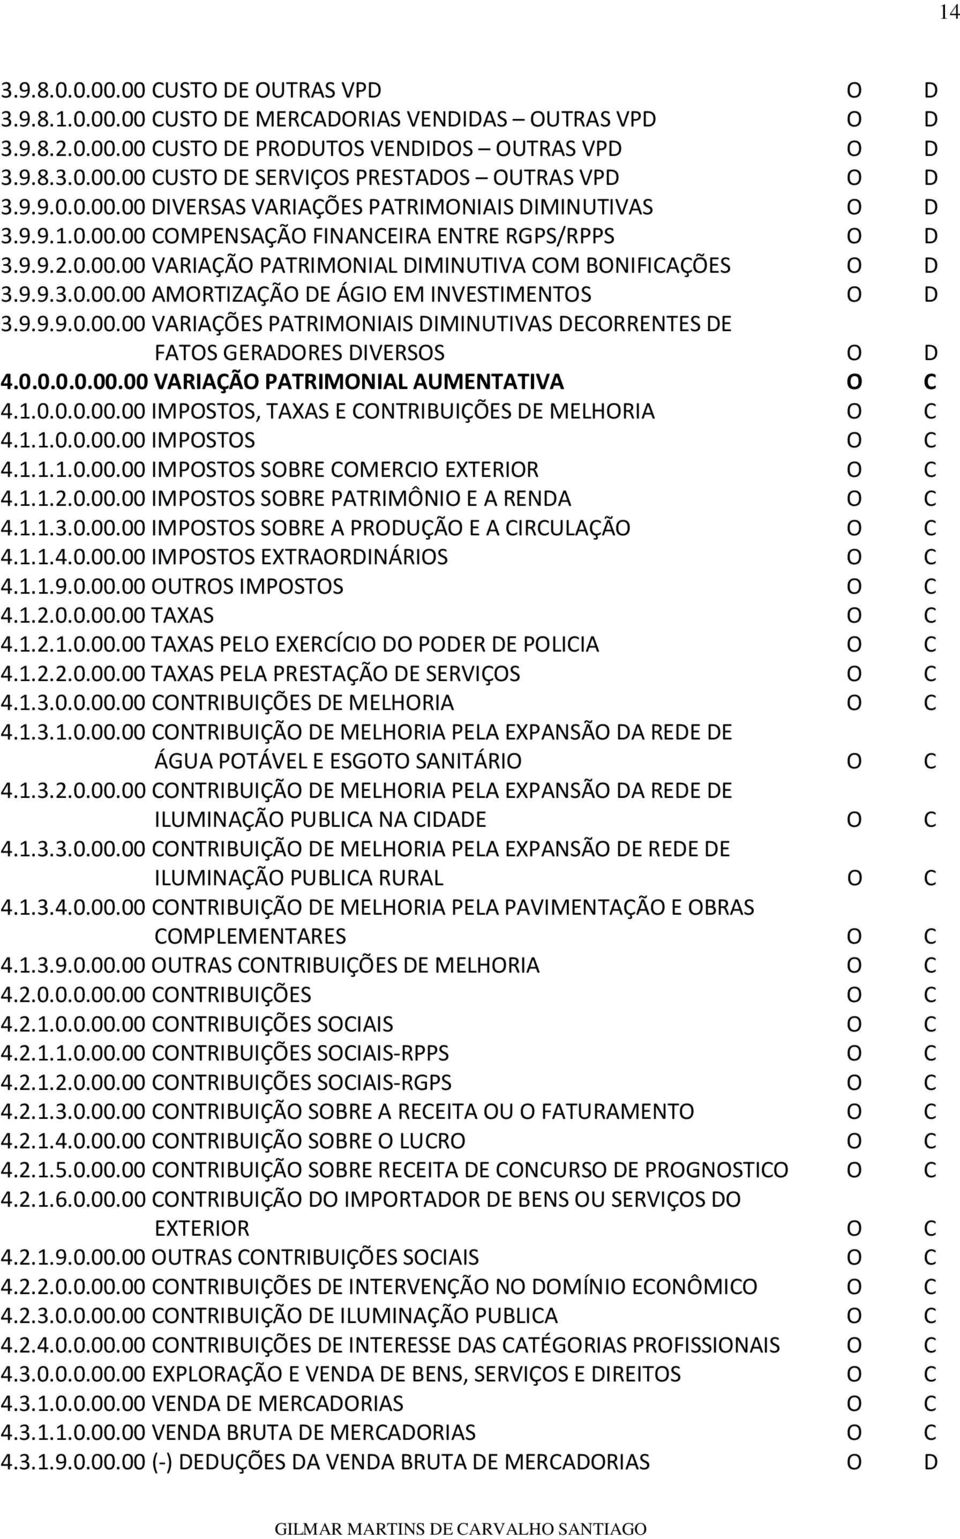 9.9.9.0.00.00 VARIAÇÕES PATRIMONIAIS DIMINUTIVAS DECORRENTES DE FATOS GERADORES DIVERSOS O D 4.0.0.0.0.00.00 VARIAÇÃO PATRIMONIAL AUMENTATIVA O C 4.1.0.0.0.00.00 IMPOSTOS, TAXAS E CONTRIBUIÇÕES DE MELHORIA O C 4.